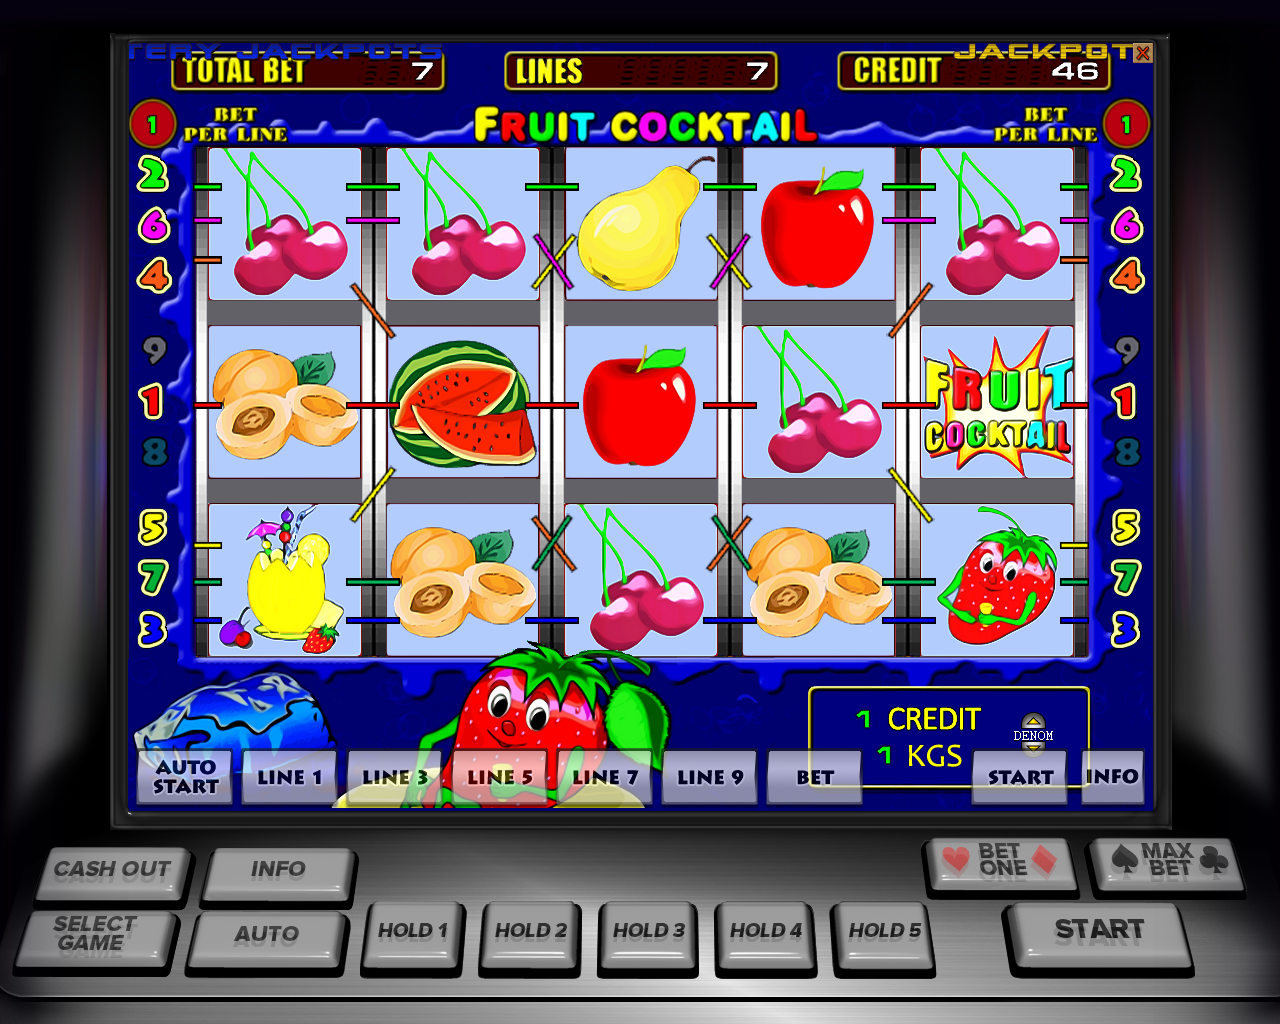 Программа игрового автомата kazino admiral x xcomyandekx